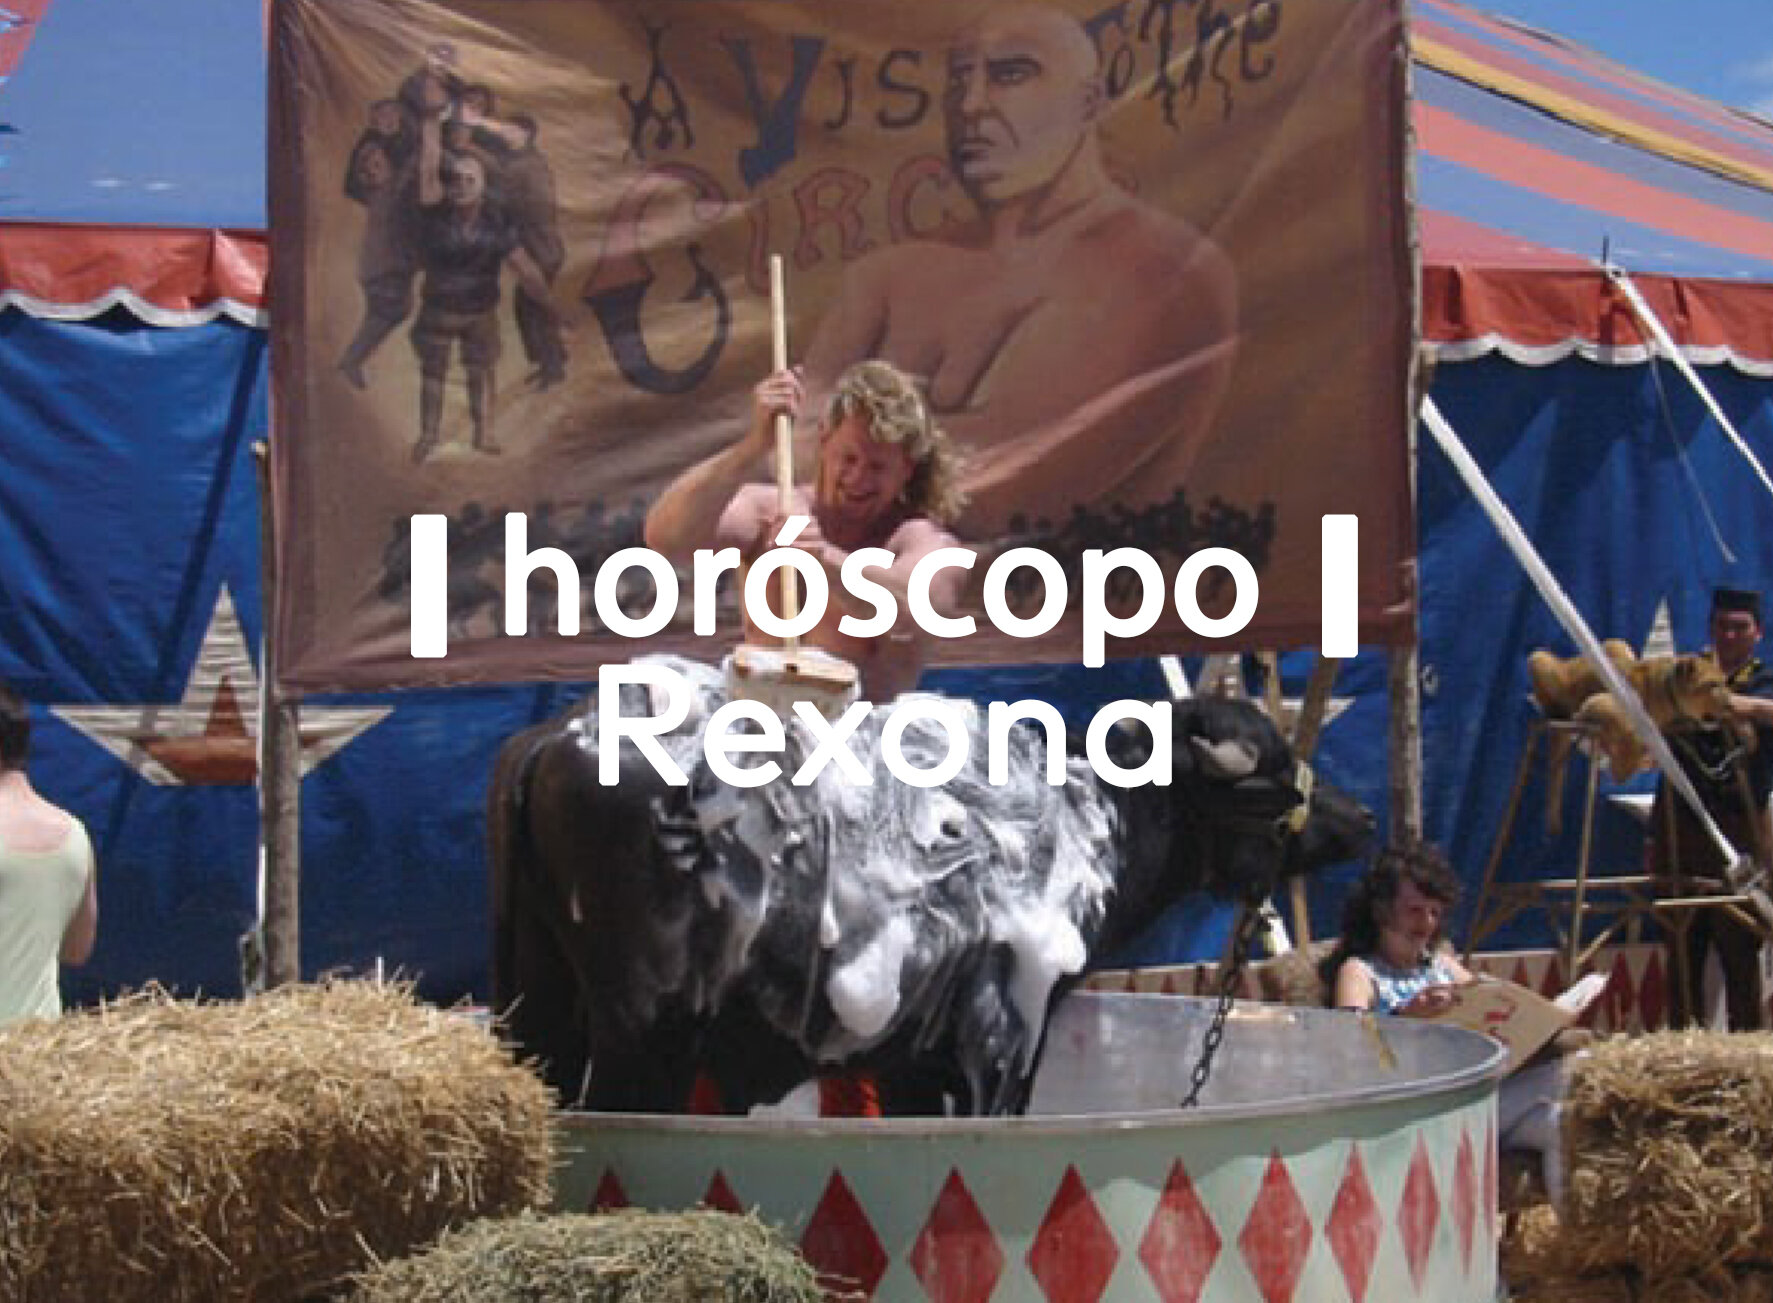 Horoscopo rexona.jpg